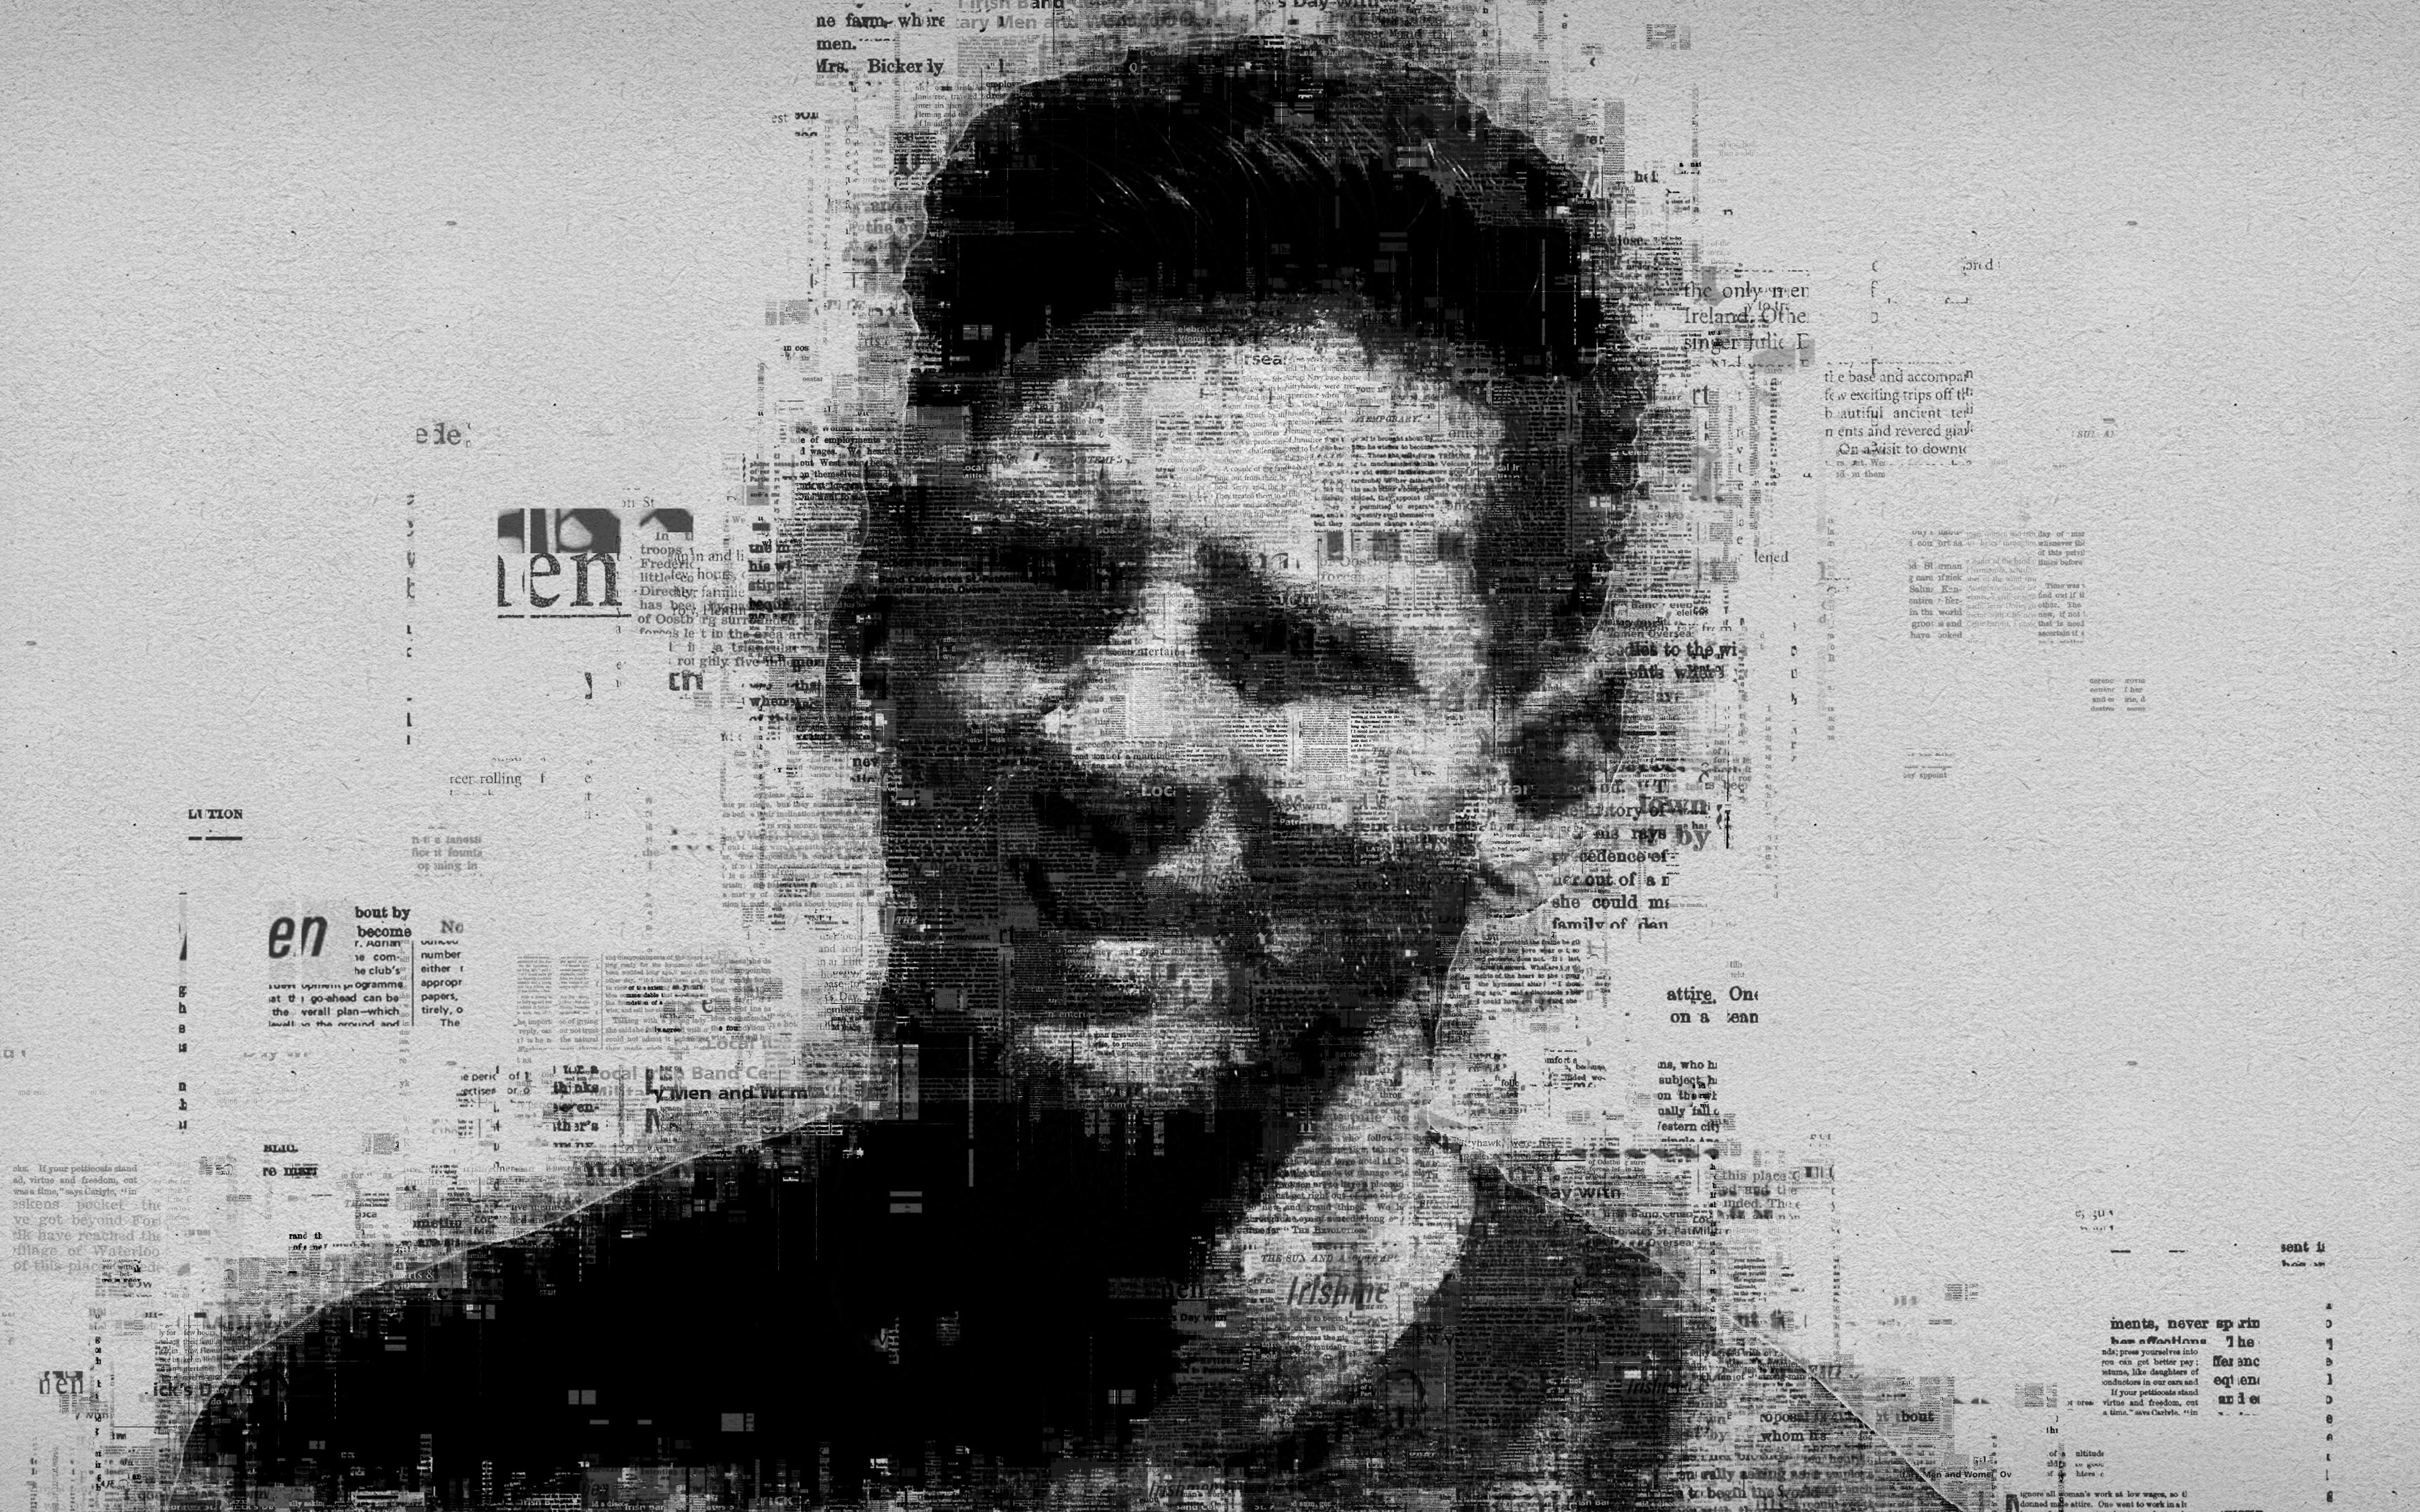 Lionel Messi: Dark 4K Wallpaper For PC